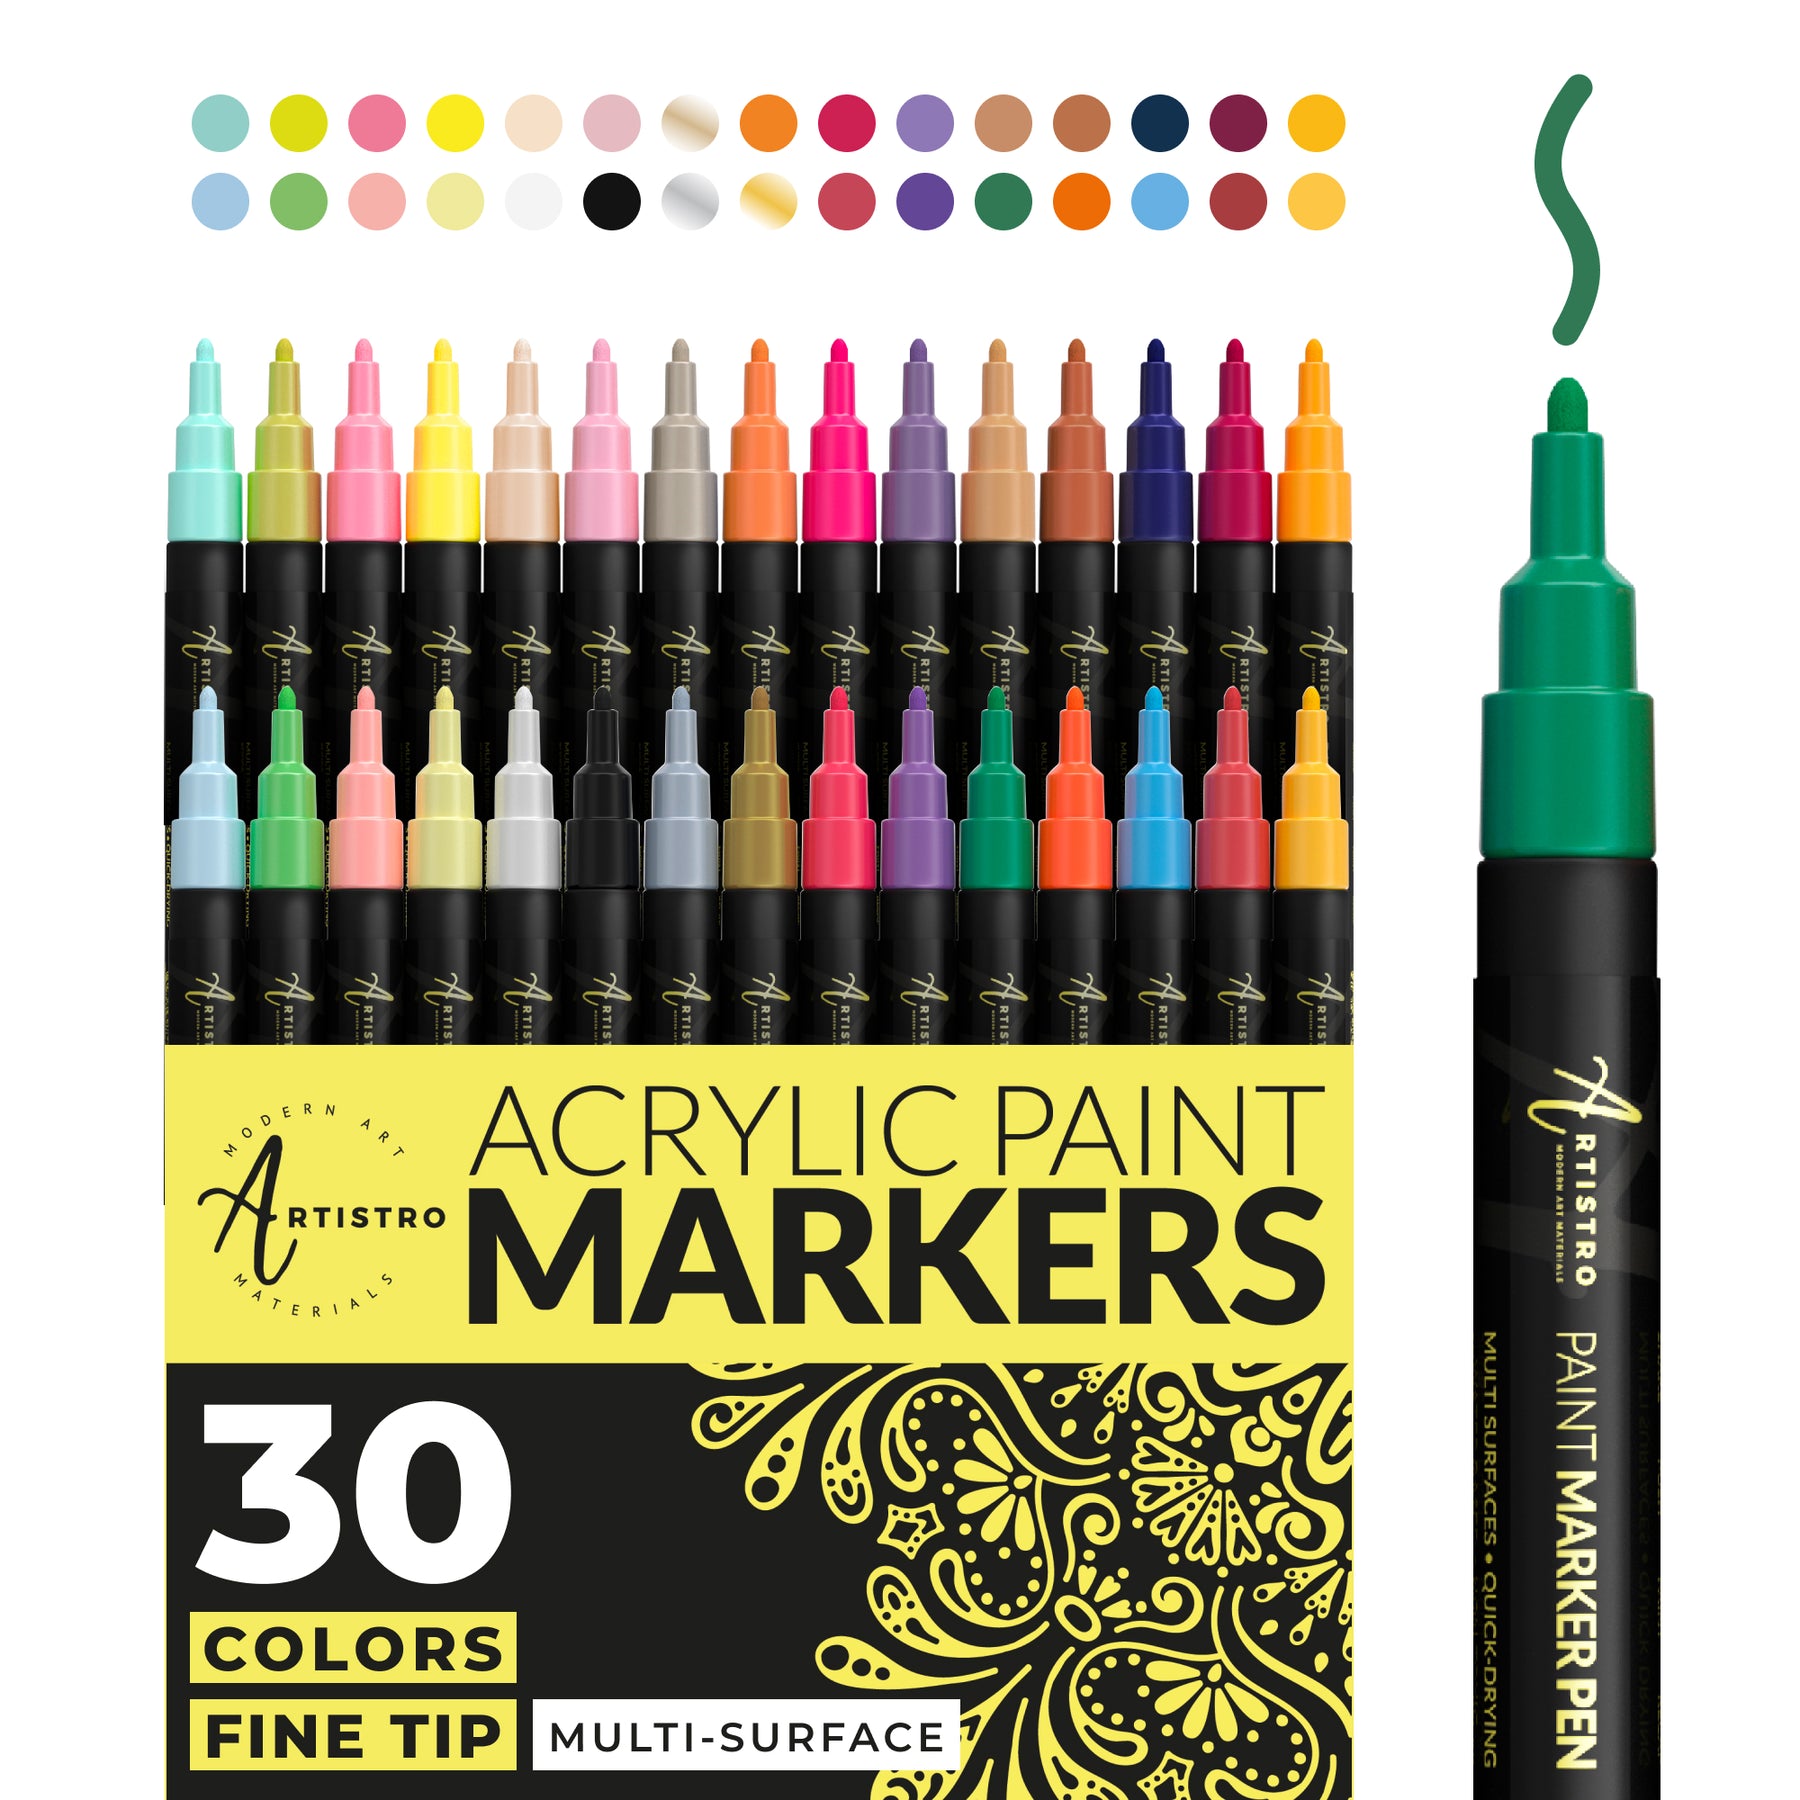 Fine Point Paint Pen Set: 30 Fine Tip Paint Markers